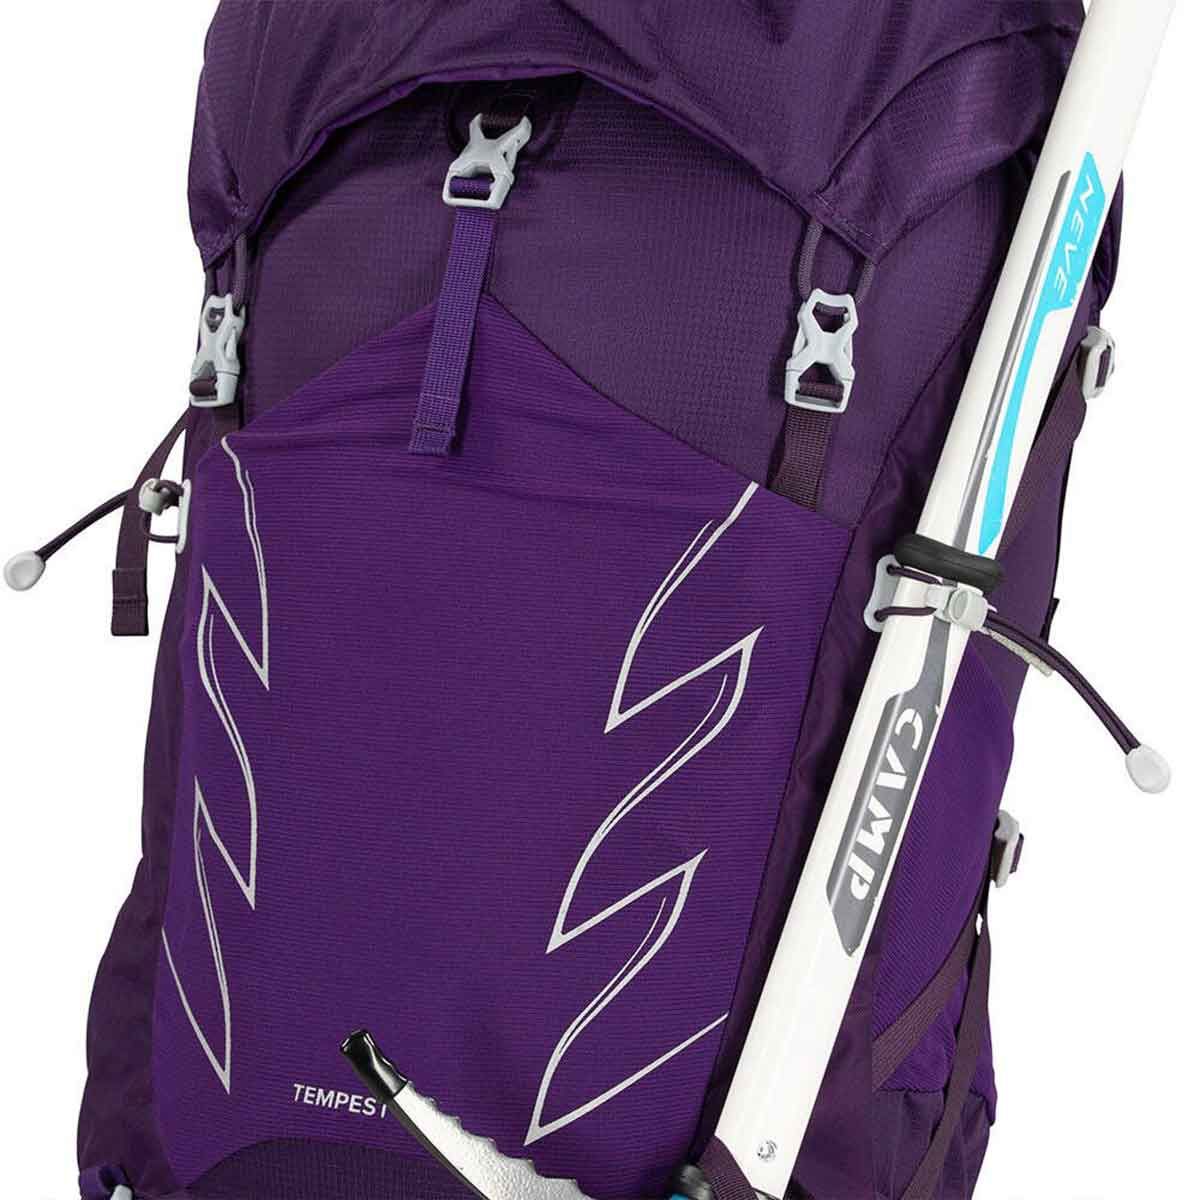 Osprey sac à dos en violet pour femme Tempest 40L